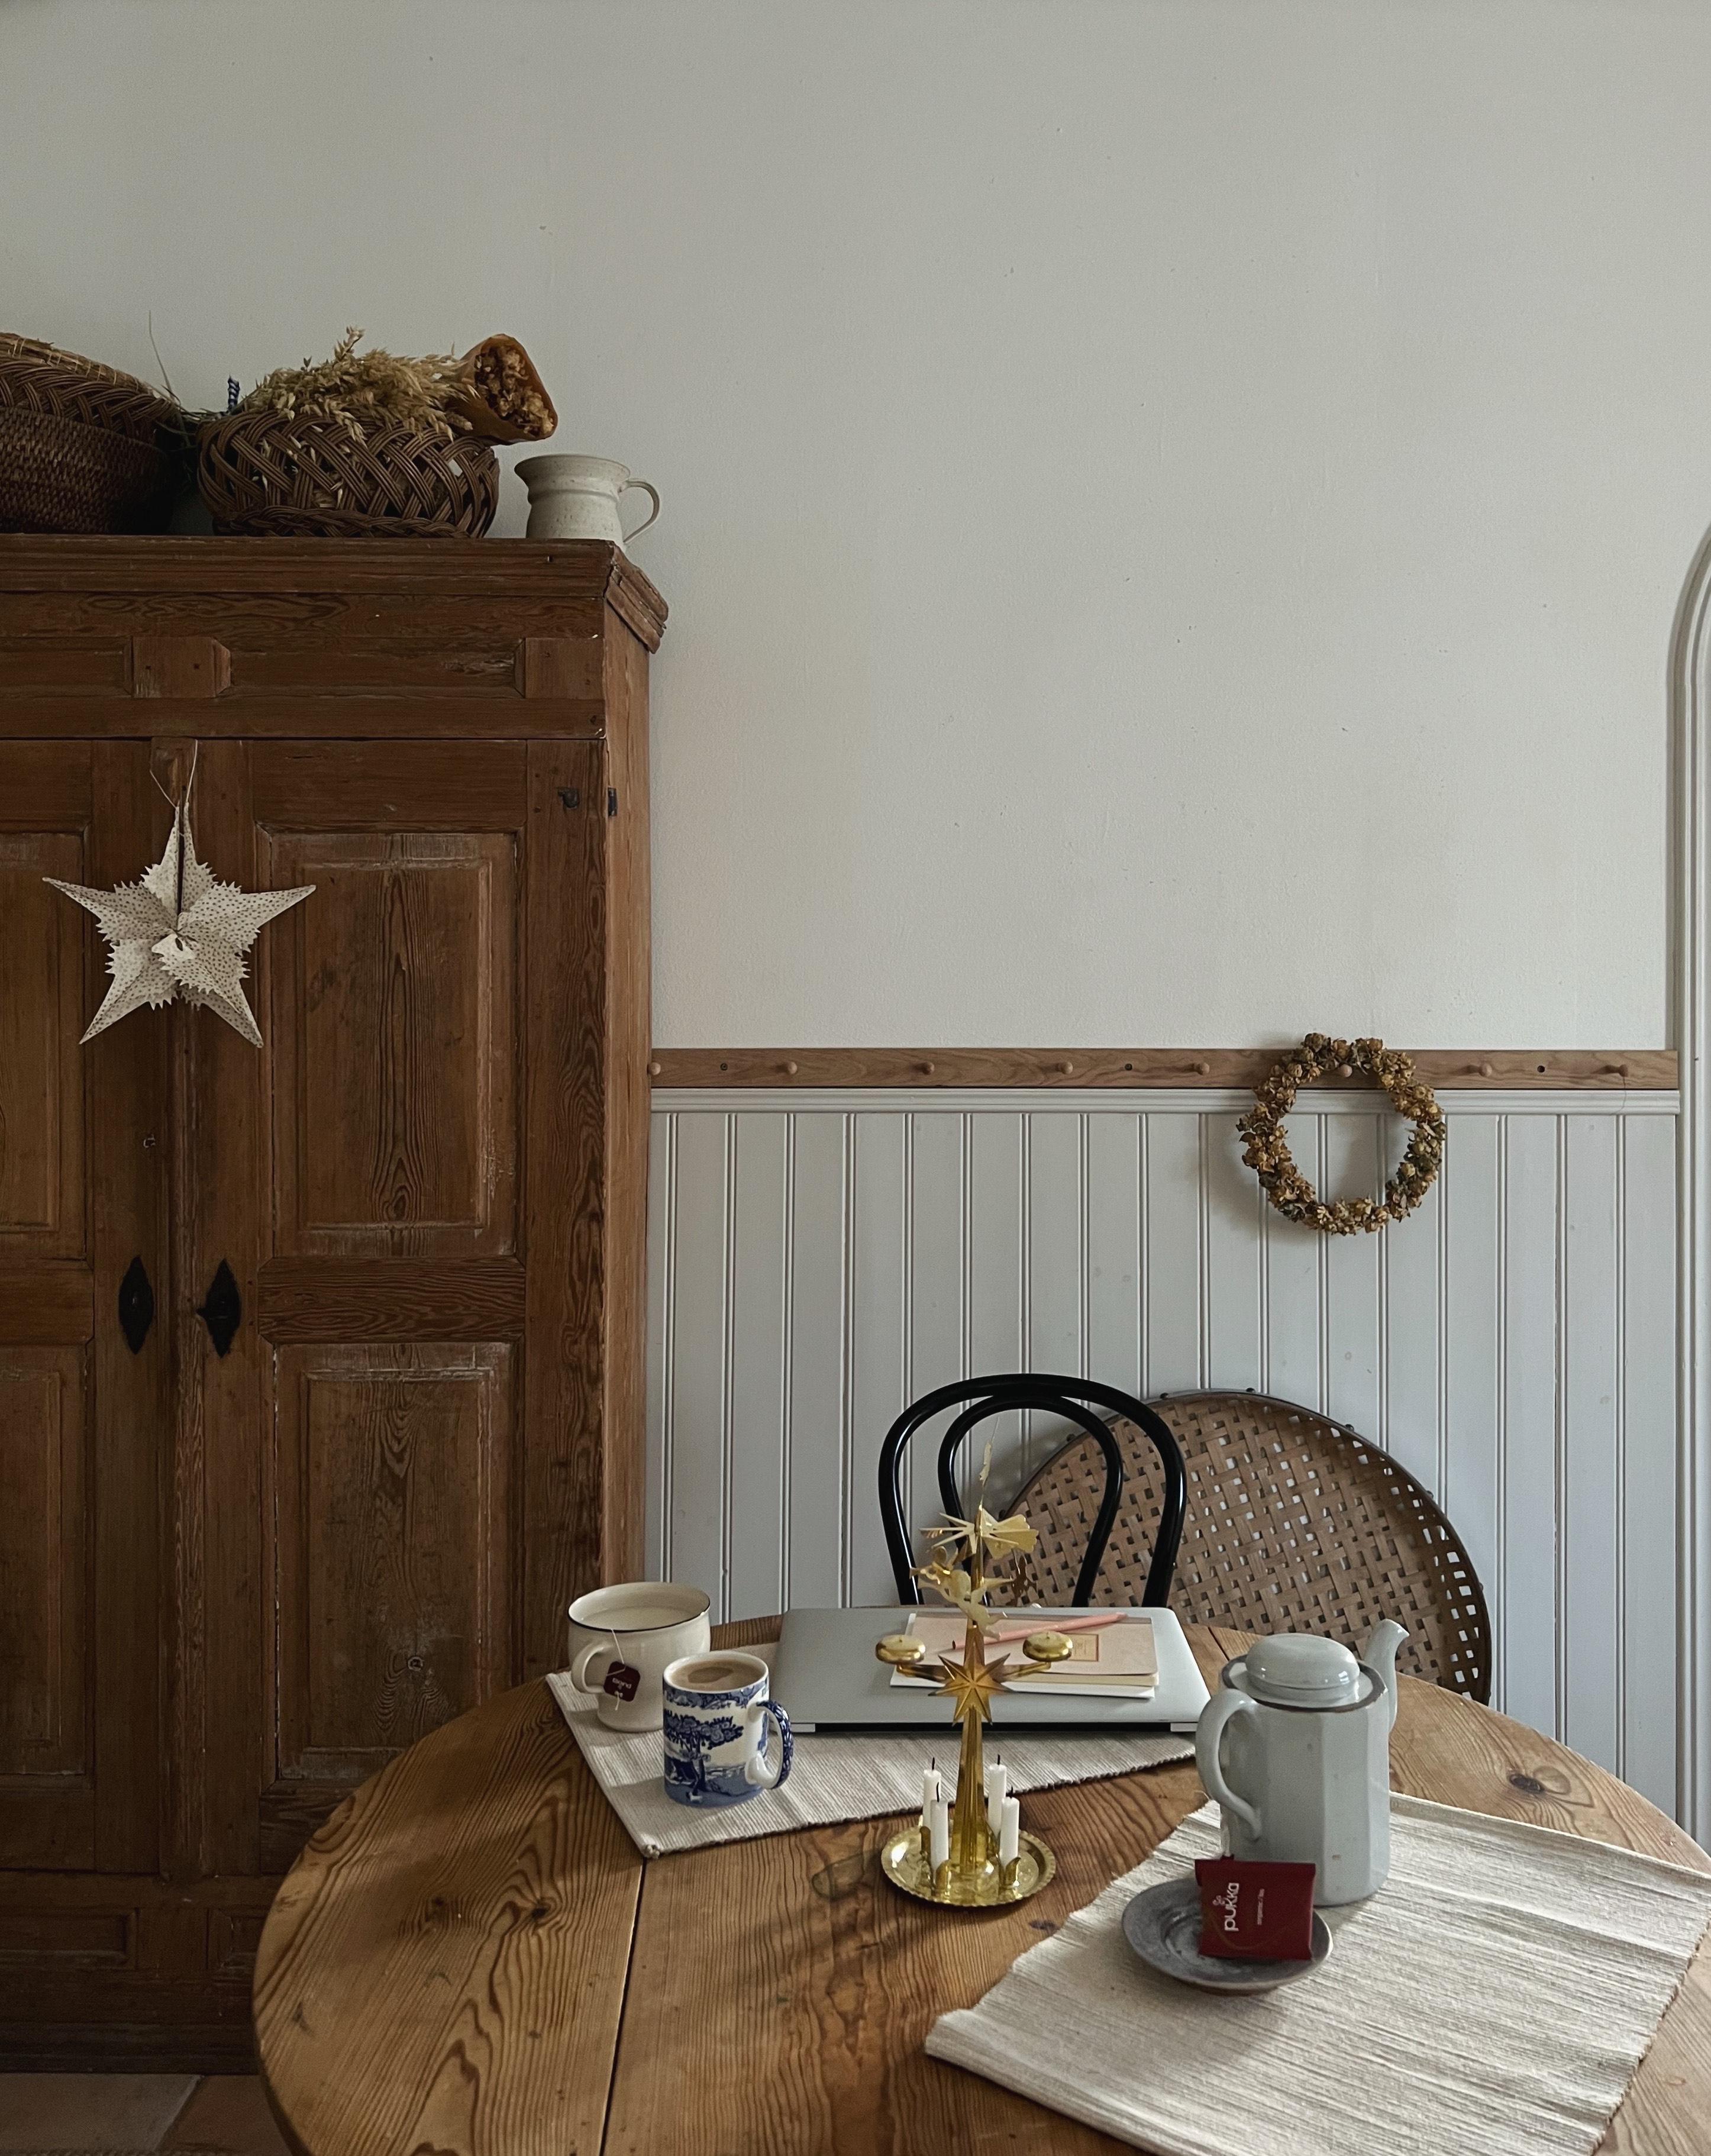 KOSELIG FROKOST: En enkel stjerne og englespill på bordet gjør morgenkaffen julekoselig.